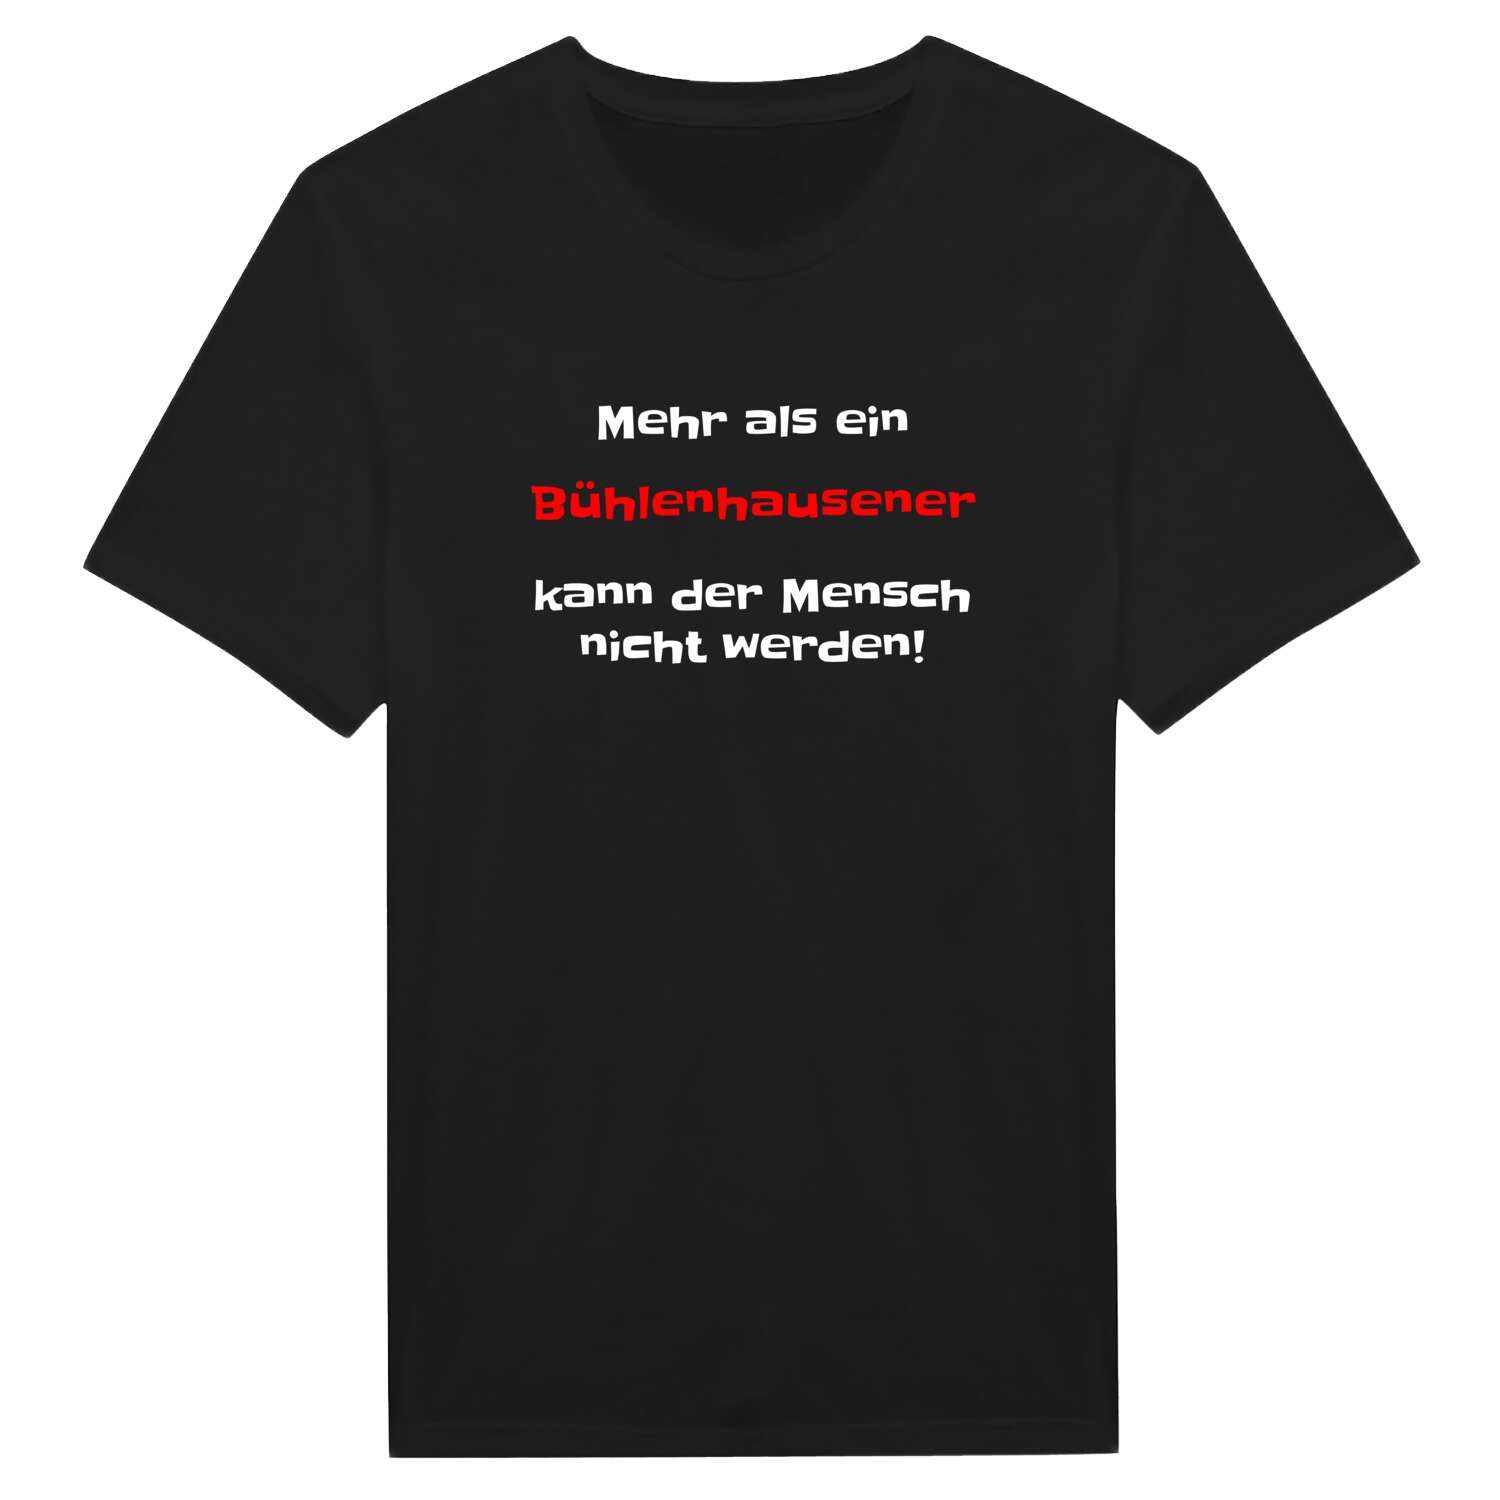 Bühlenhausen T-Shirt »Mehr als ein«